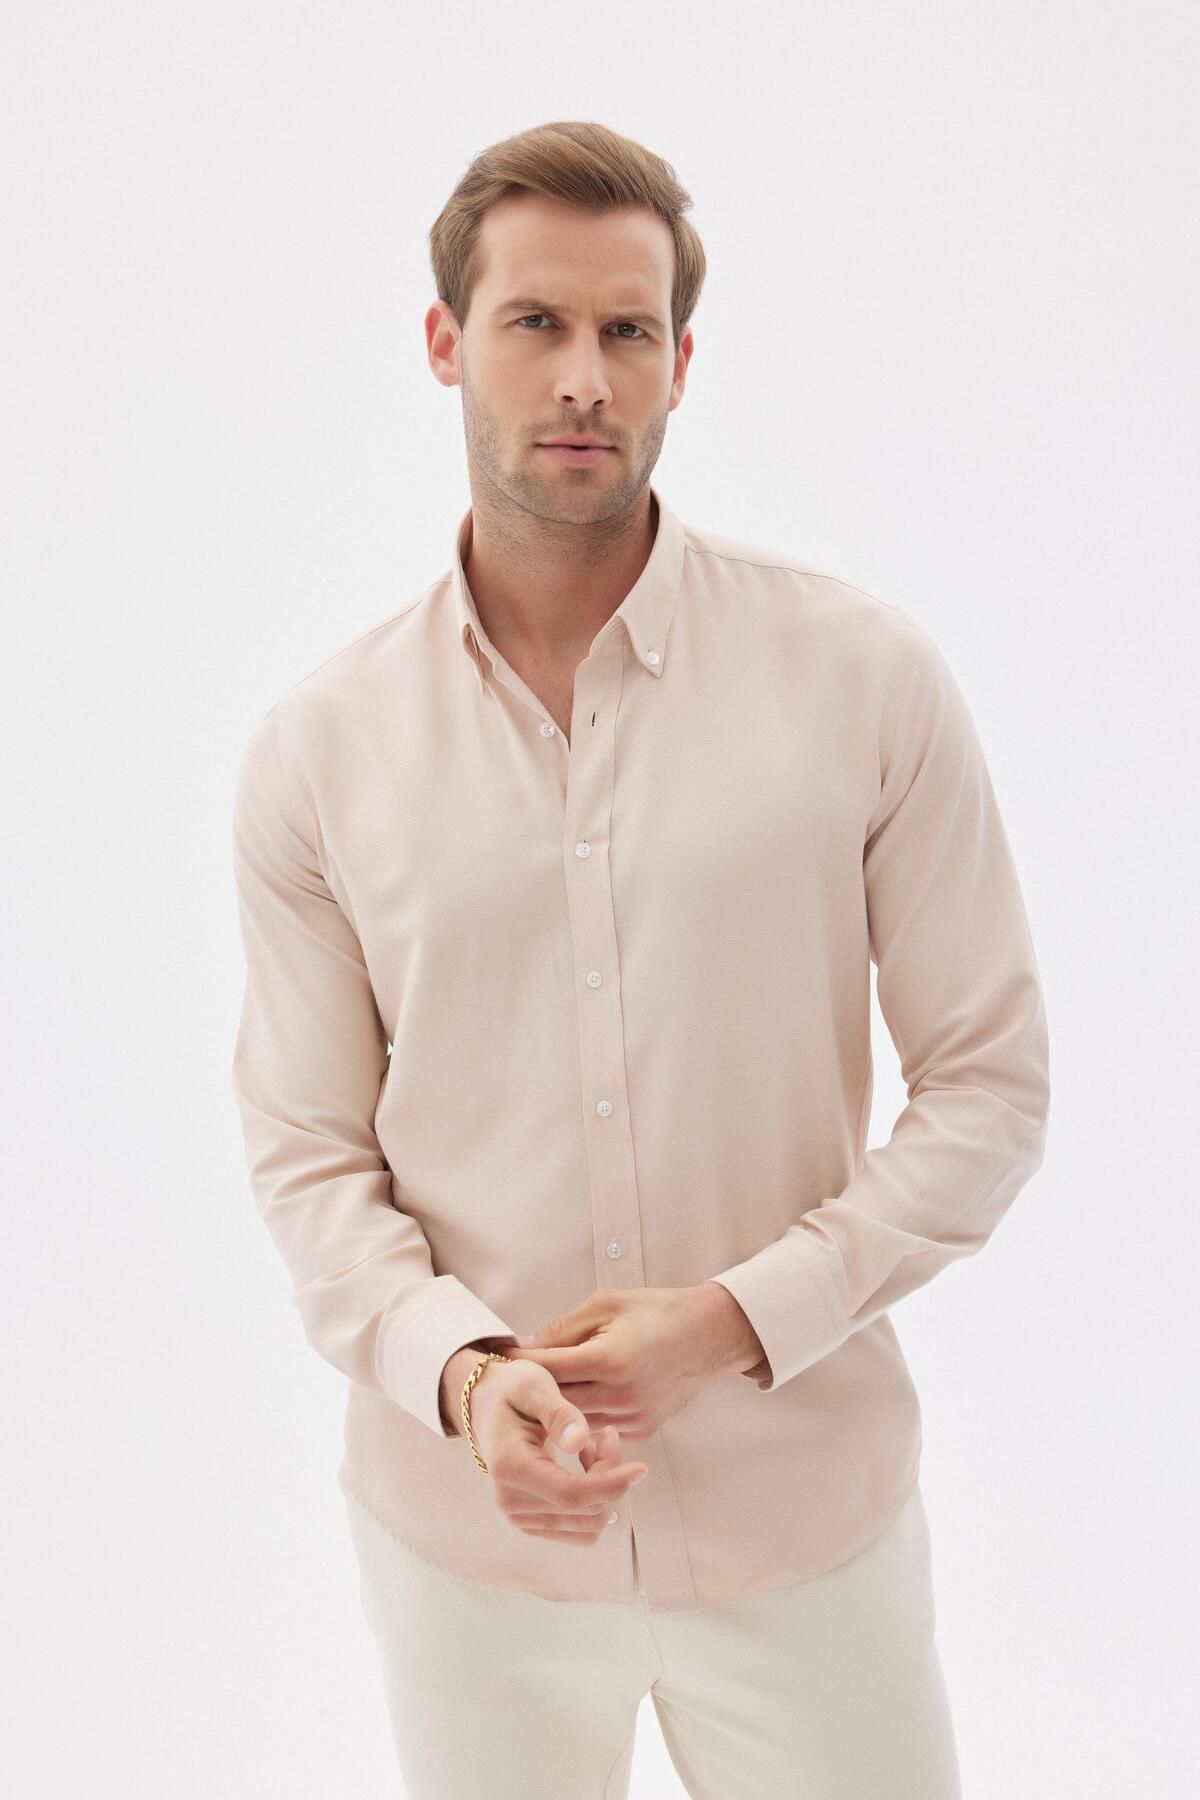 odelon Erkek Kolay Ütülenebilir Oxford Slim Fit Gömlek Bej Mars36